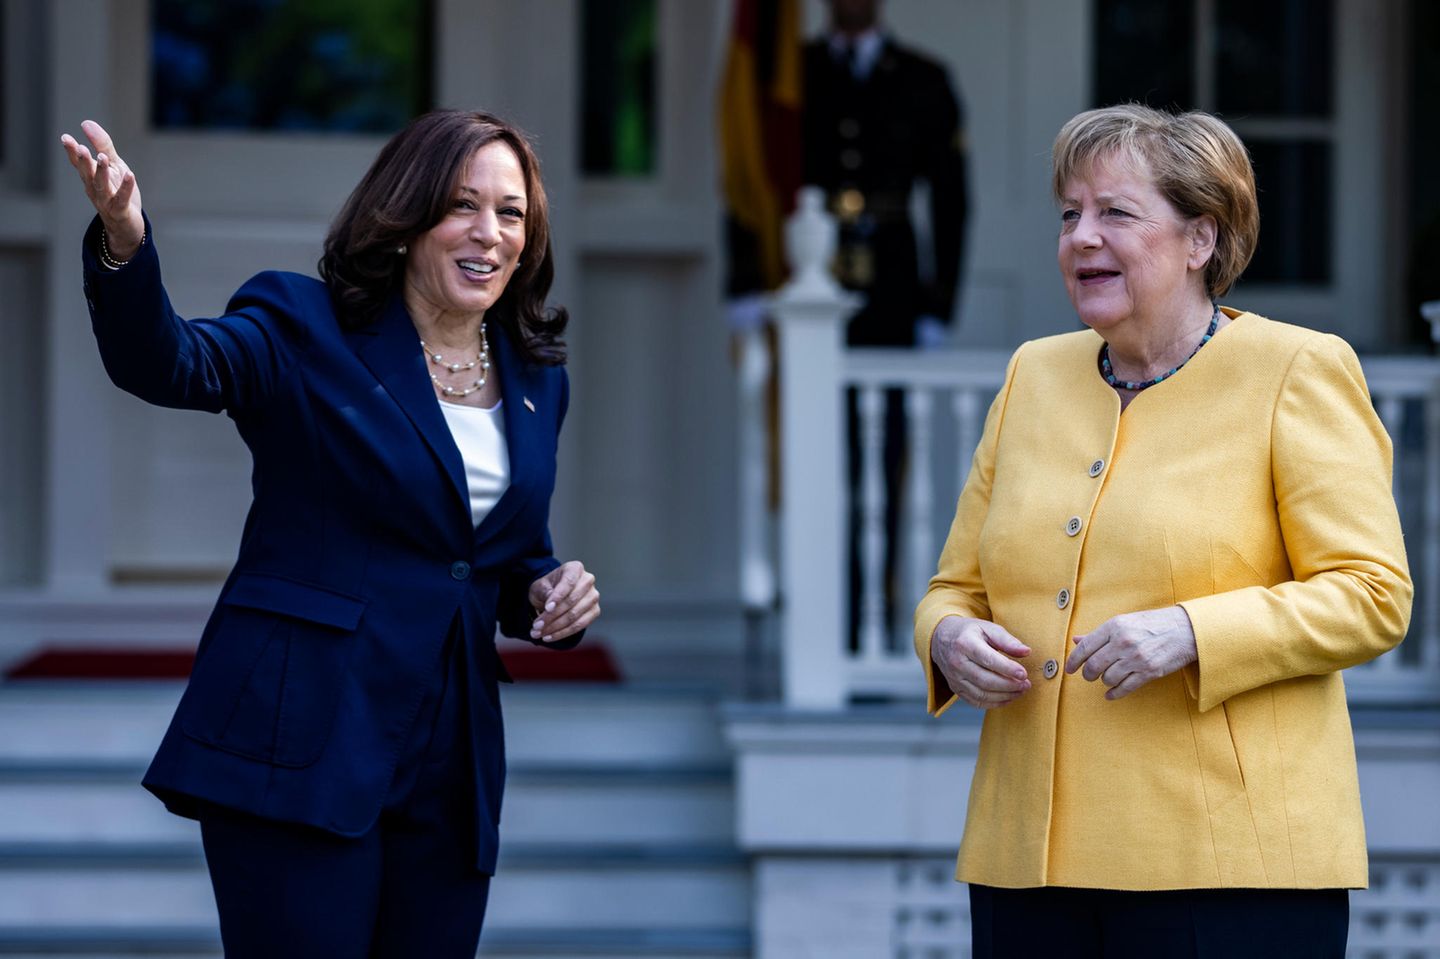 Powerfrauen unter sich! Bundeskanzlerin Angela Merkel trifft US-Vizepräsidentin Kamala Harris. Beim Empfang scheinen sich beide nicht nur prächtig zu verstehen, auch optisch sind sie sich einig: farbiger Blazer kombiniert mit Perlenkette. Während Kamala Harris sowohl bei ihrem Blazer, als auch bei ihrer Kette auf schlichte Farben setzt, geht es Angela Merkel bunter an und sticht mit ihrem hochgeschlossenen gelben Blazer direkt ins Auge.